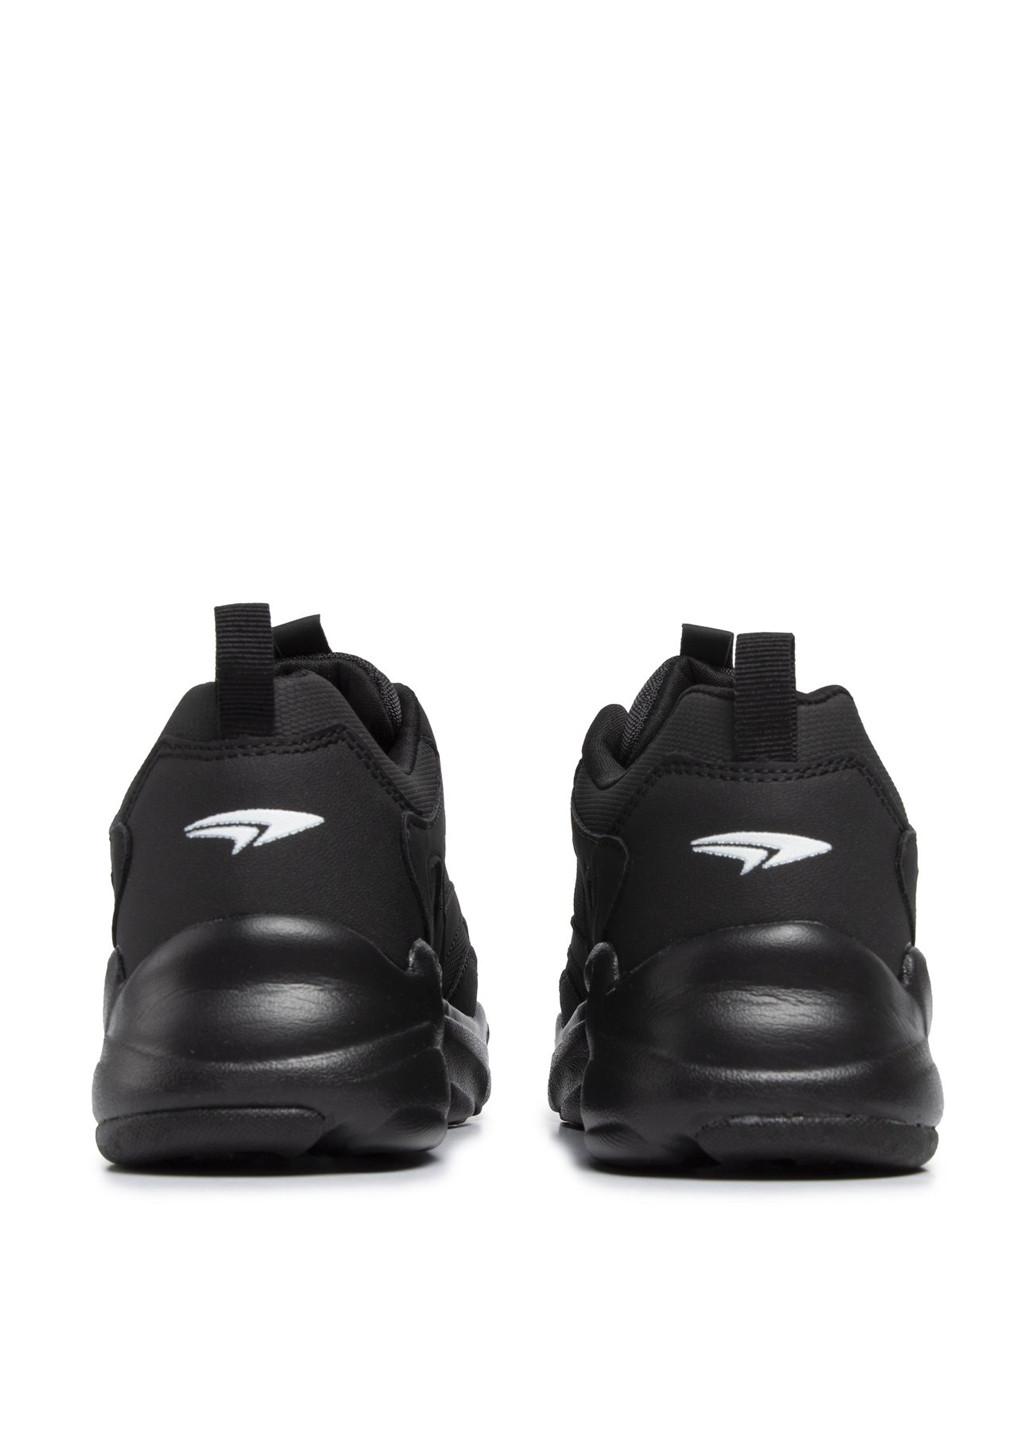 Черные демисезонные кросівки Sprandi WP40-8691Z